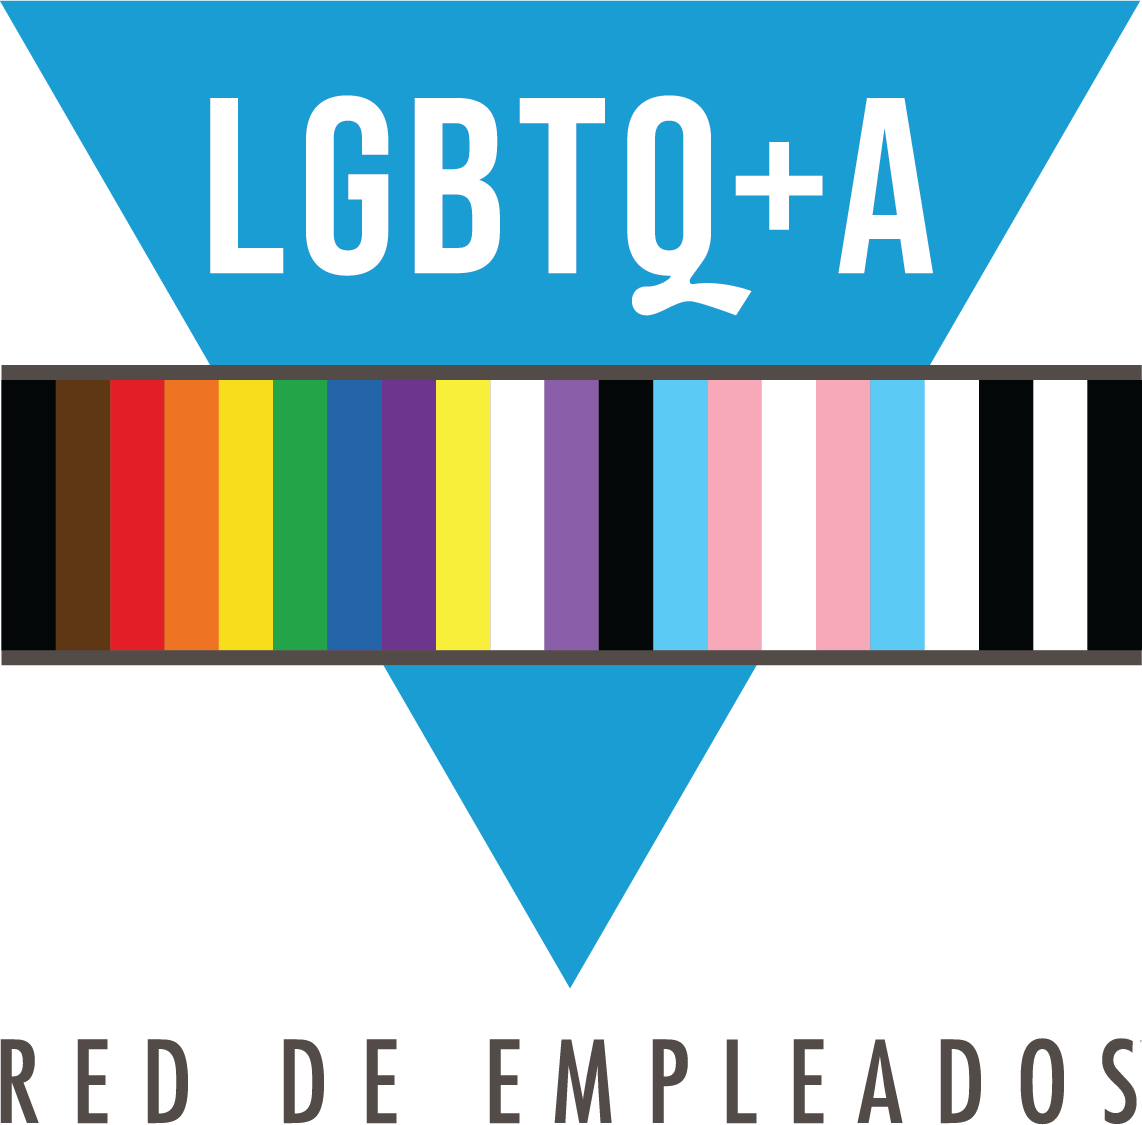 Red de lesbianas, gays, bisexuales, transgénero y aliados